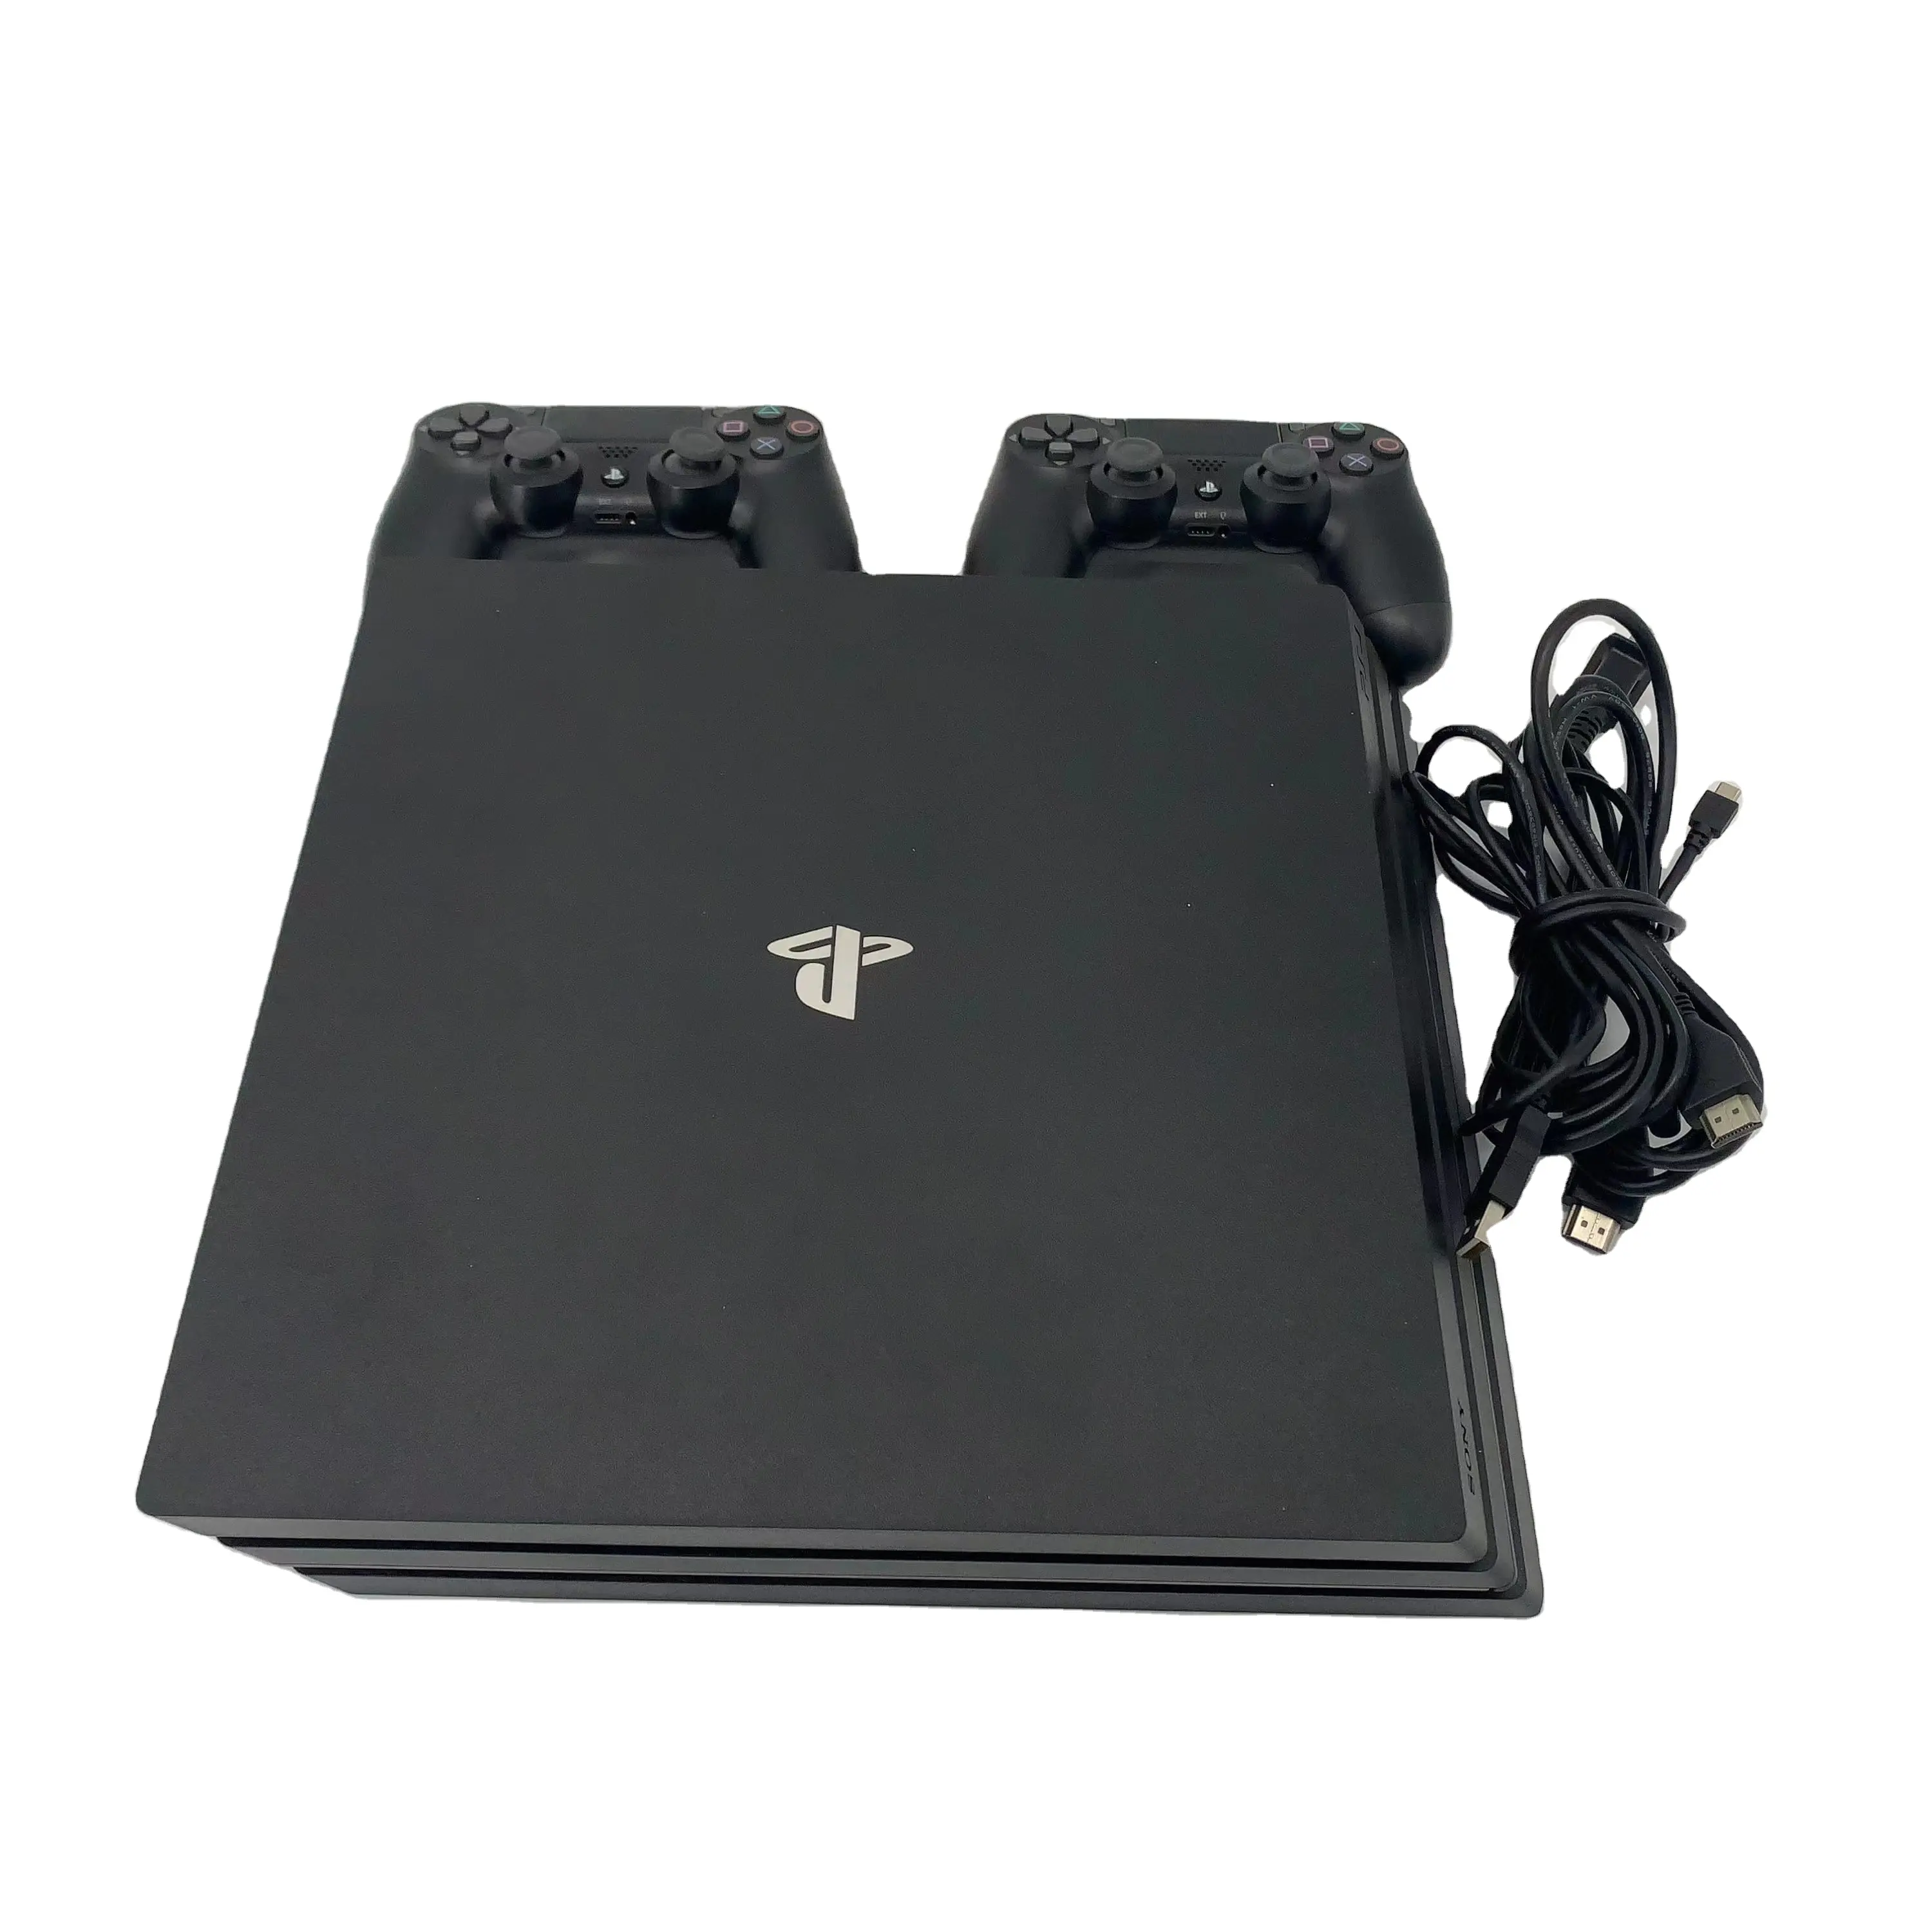 Toptan kullanılan orijinal PS4 pro için Sony playstation Slim pro 4 1 TB video oyunu 512g elde kullanılır oyun konsolu